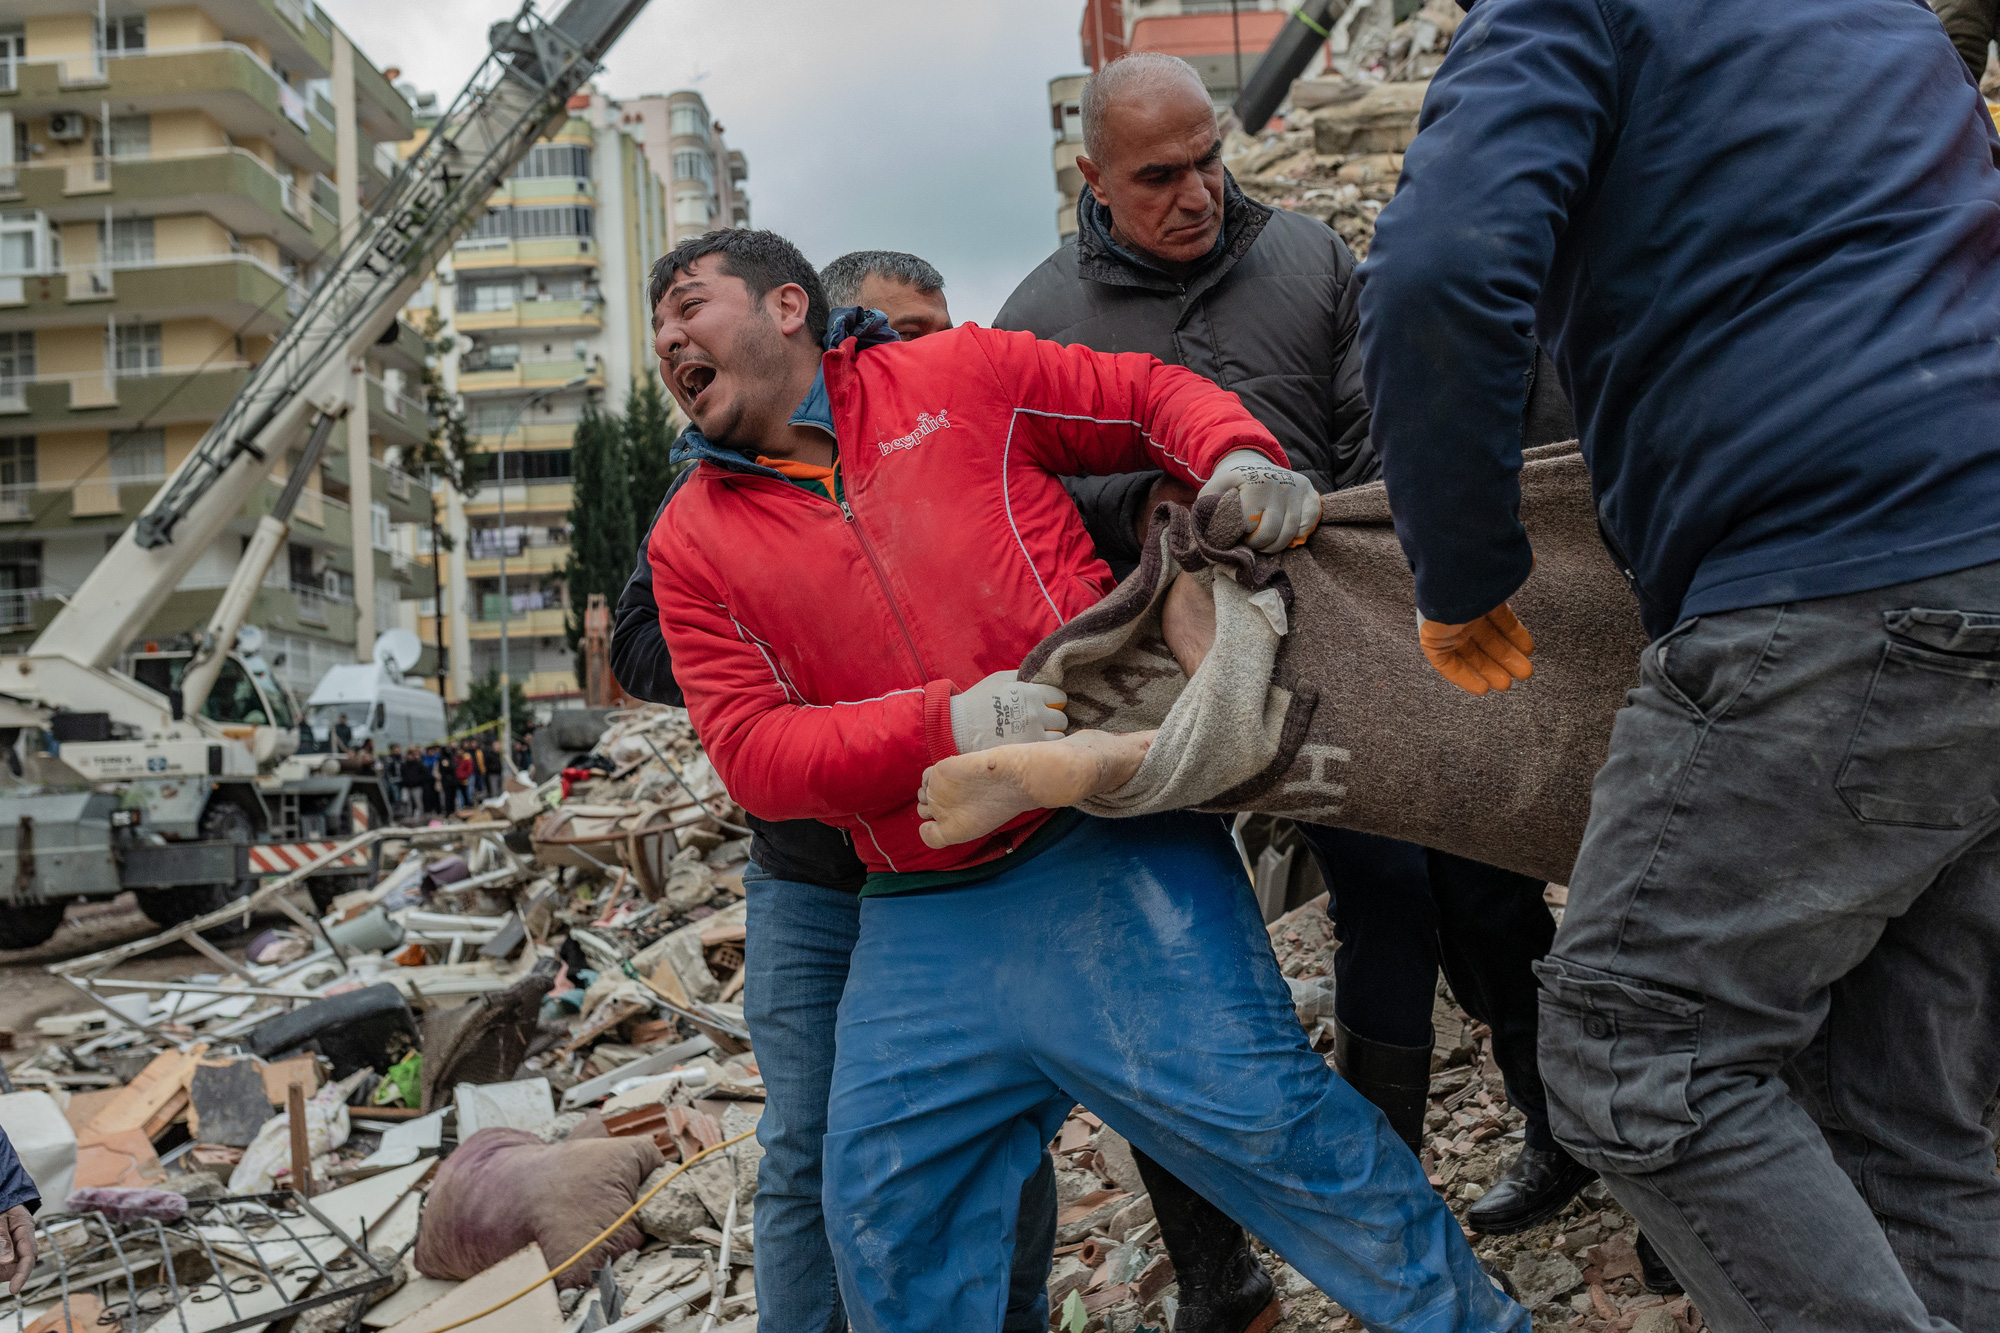 Động đất ở Thổ Nhĩ Kỳ: Các nước khẩn trương hỗ trợ, chưa xác định có nạn nhân người Việt - ảnh 1